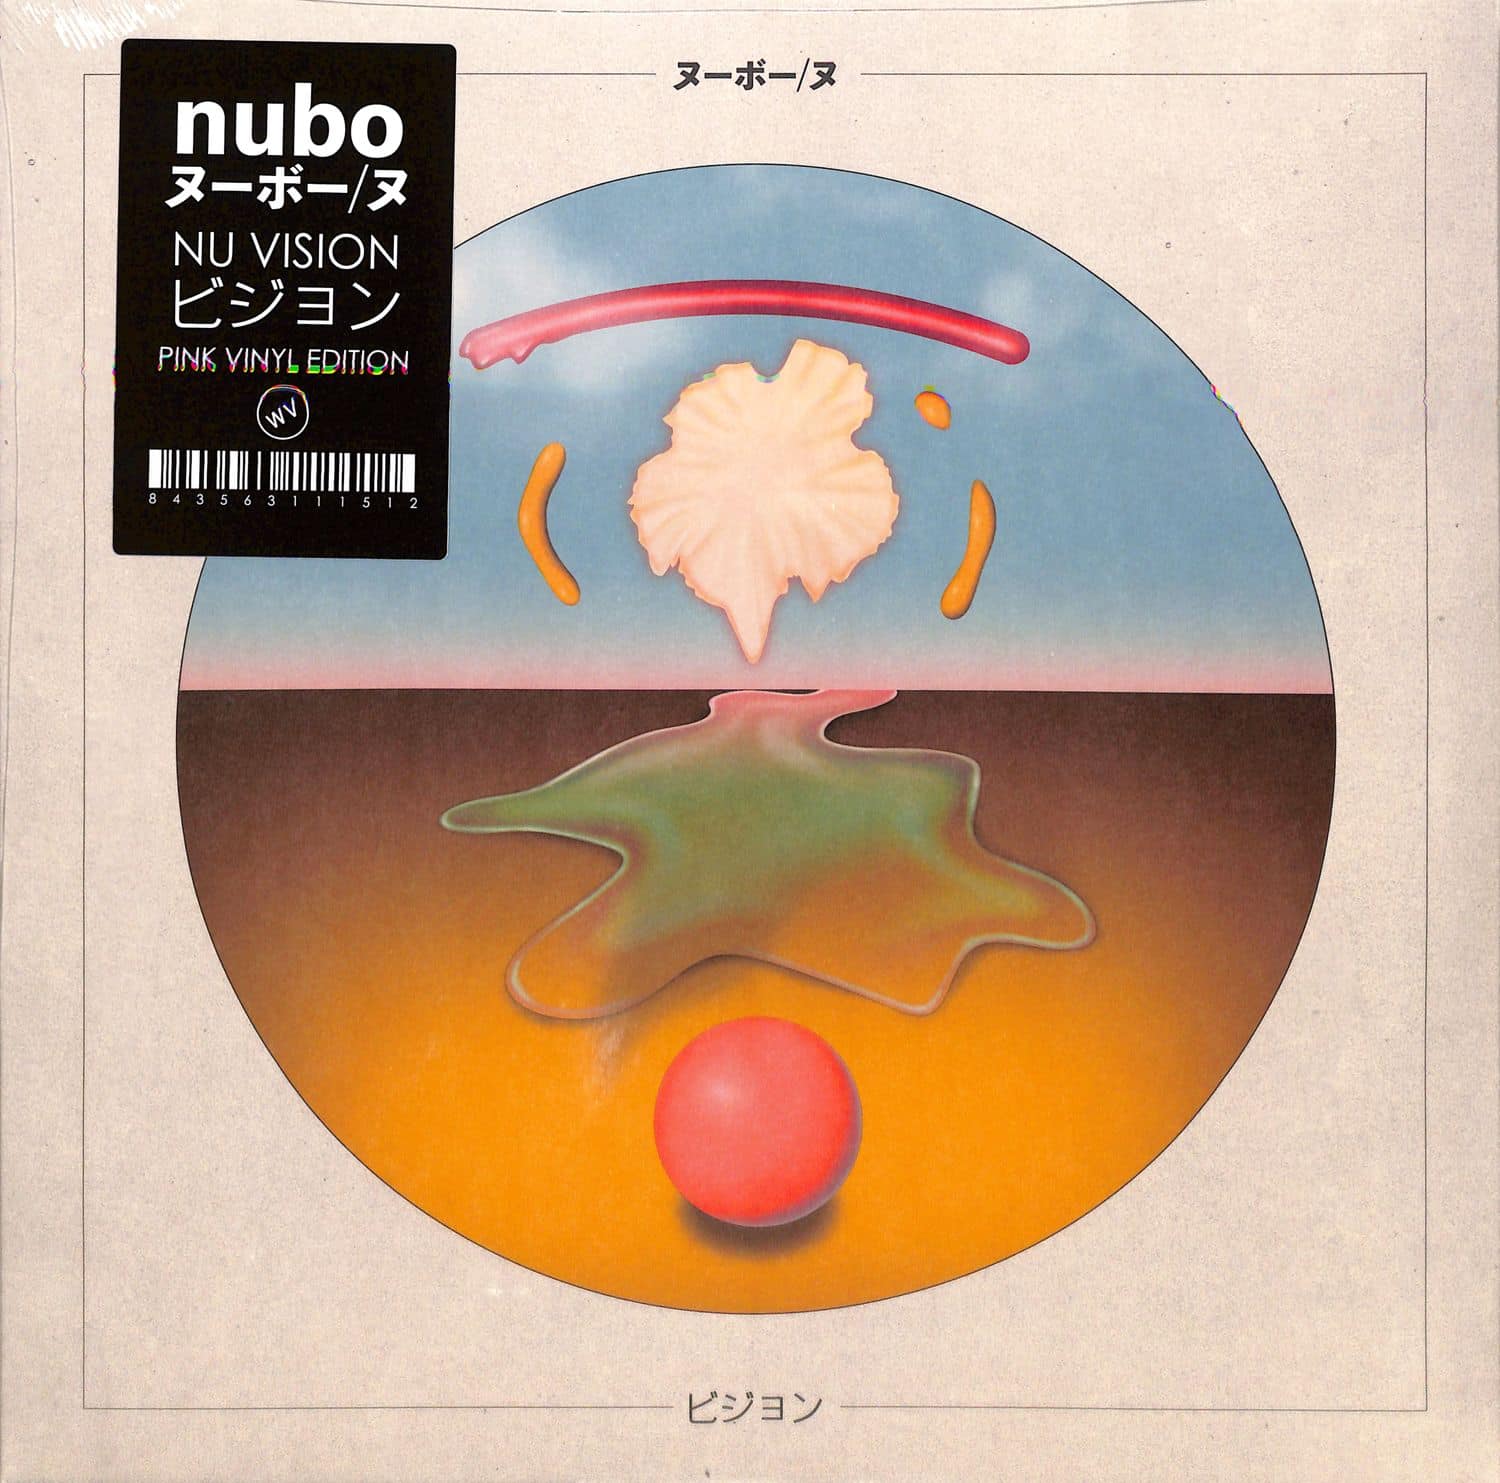 Nubo - NU VISION 